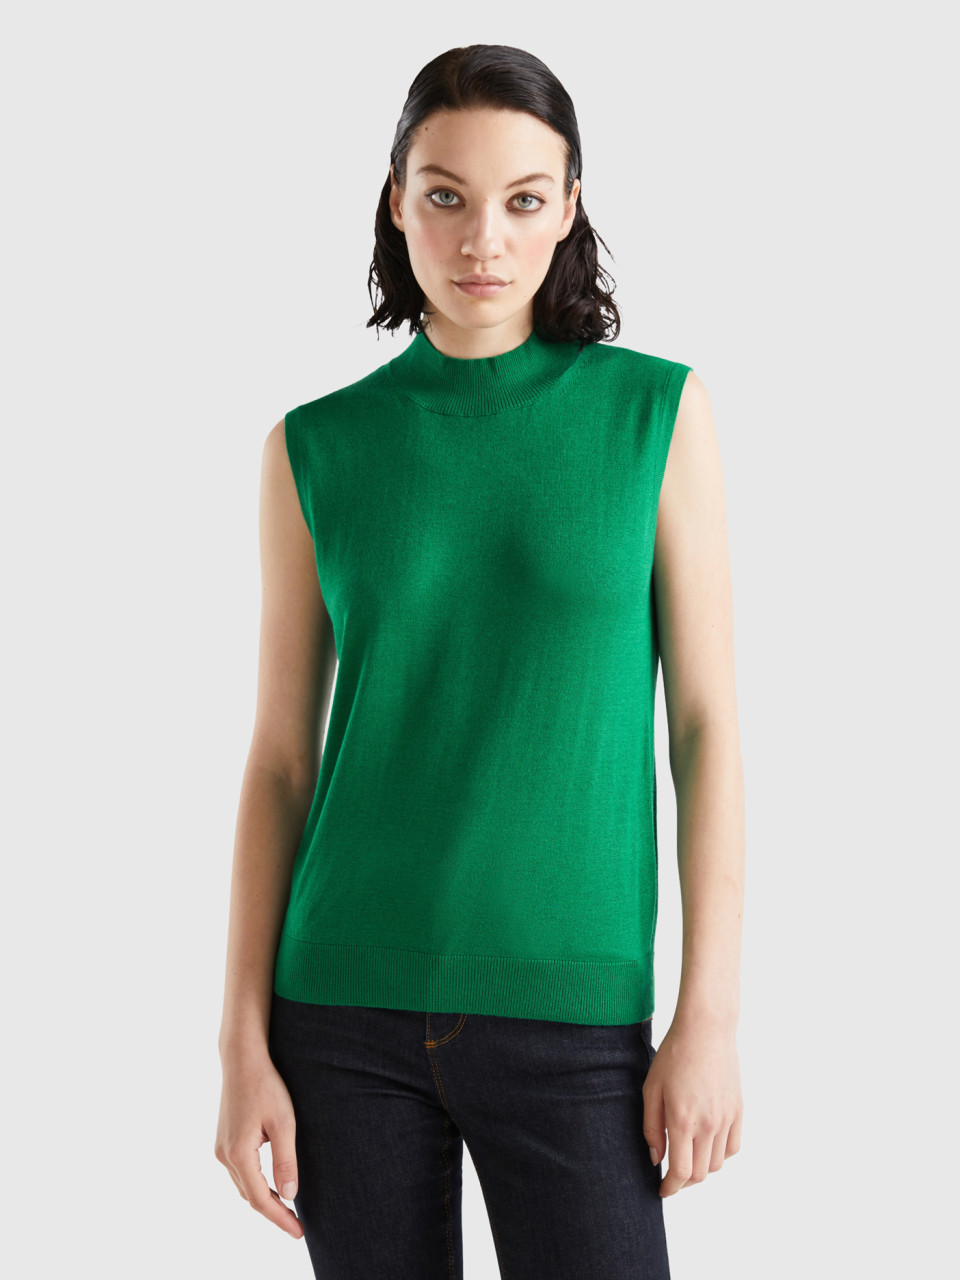 Benetton, Sleeveless Sweater In Viscose Blend, Green, Women